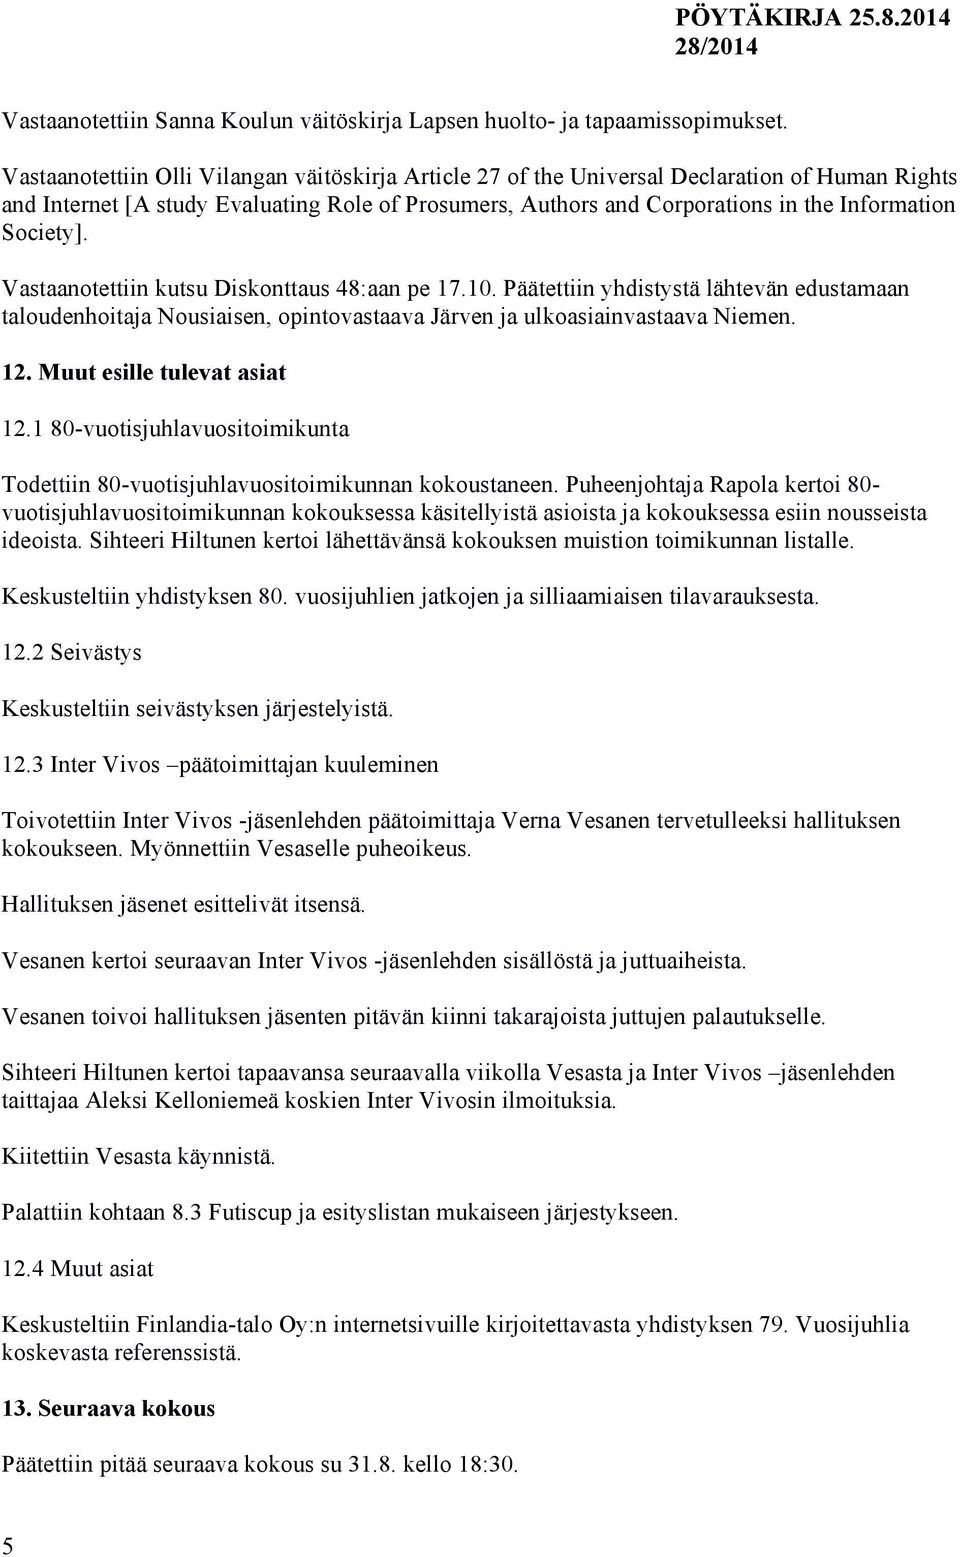 Society]. Vastaanotettiin kutsu Diskonttaus 48:aan pe 17.10. Päätettiin yhdistystä lähtevän edustamaan taloudenhoitaja Nousiaisen, opintovastaava Järven ja ulkoasiainvastaava Niemen. 12.